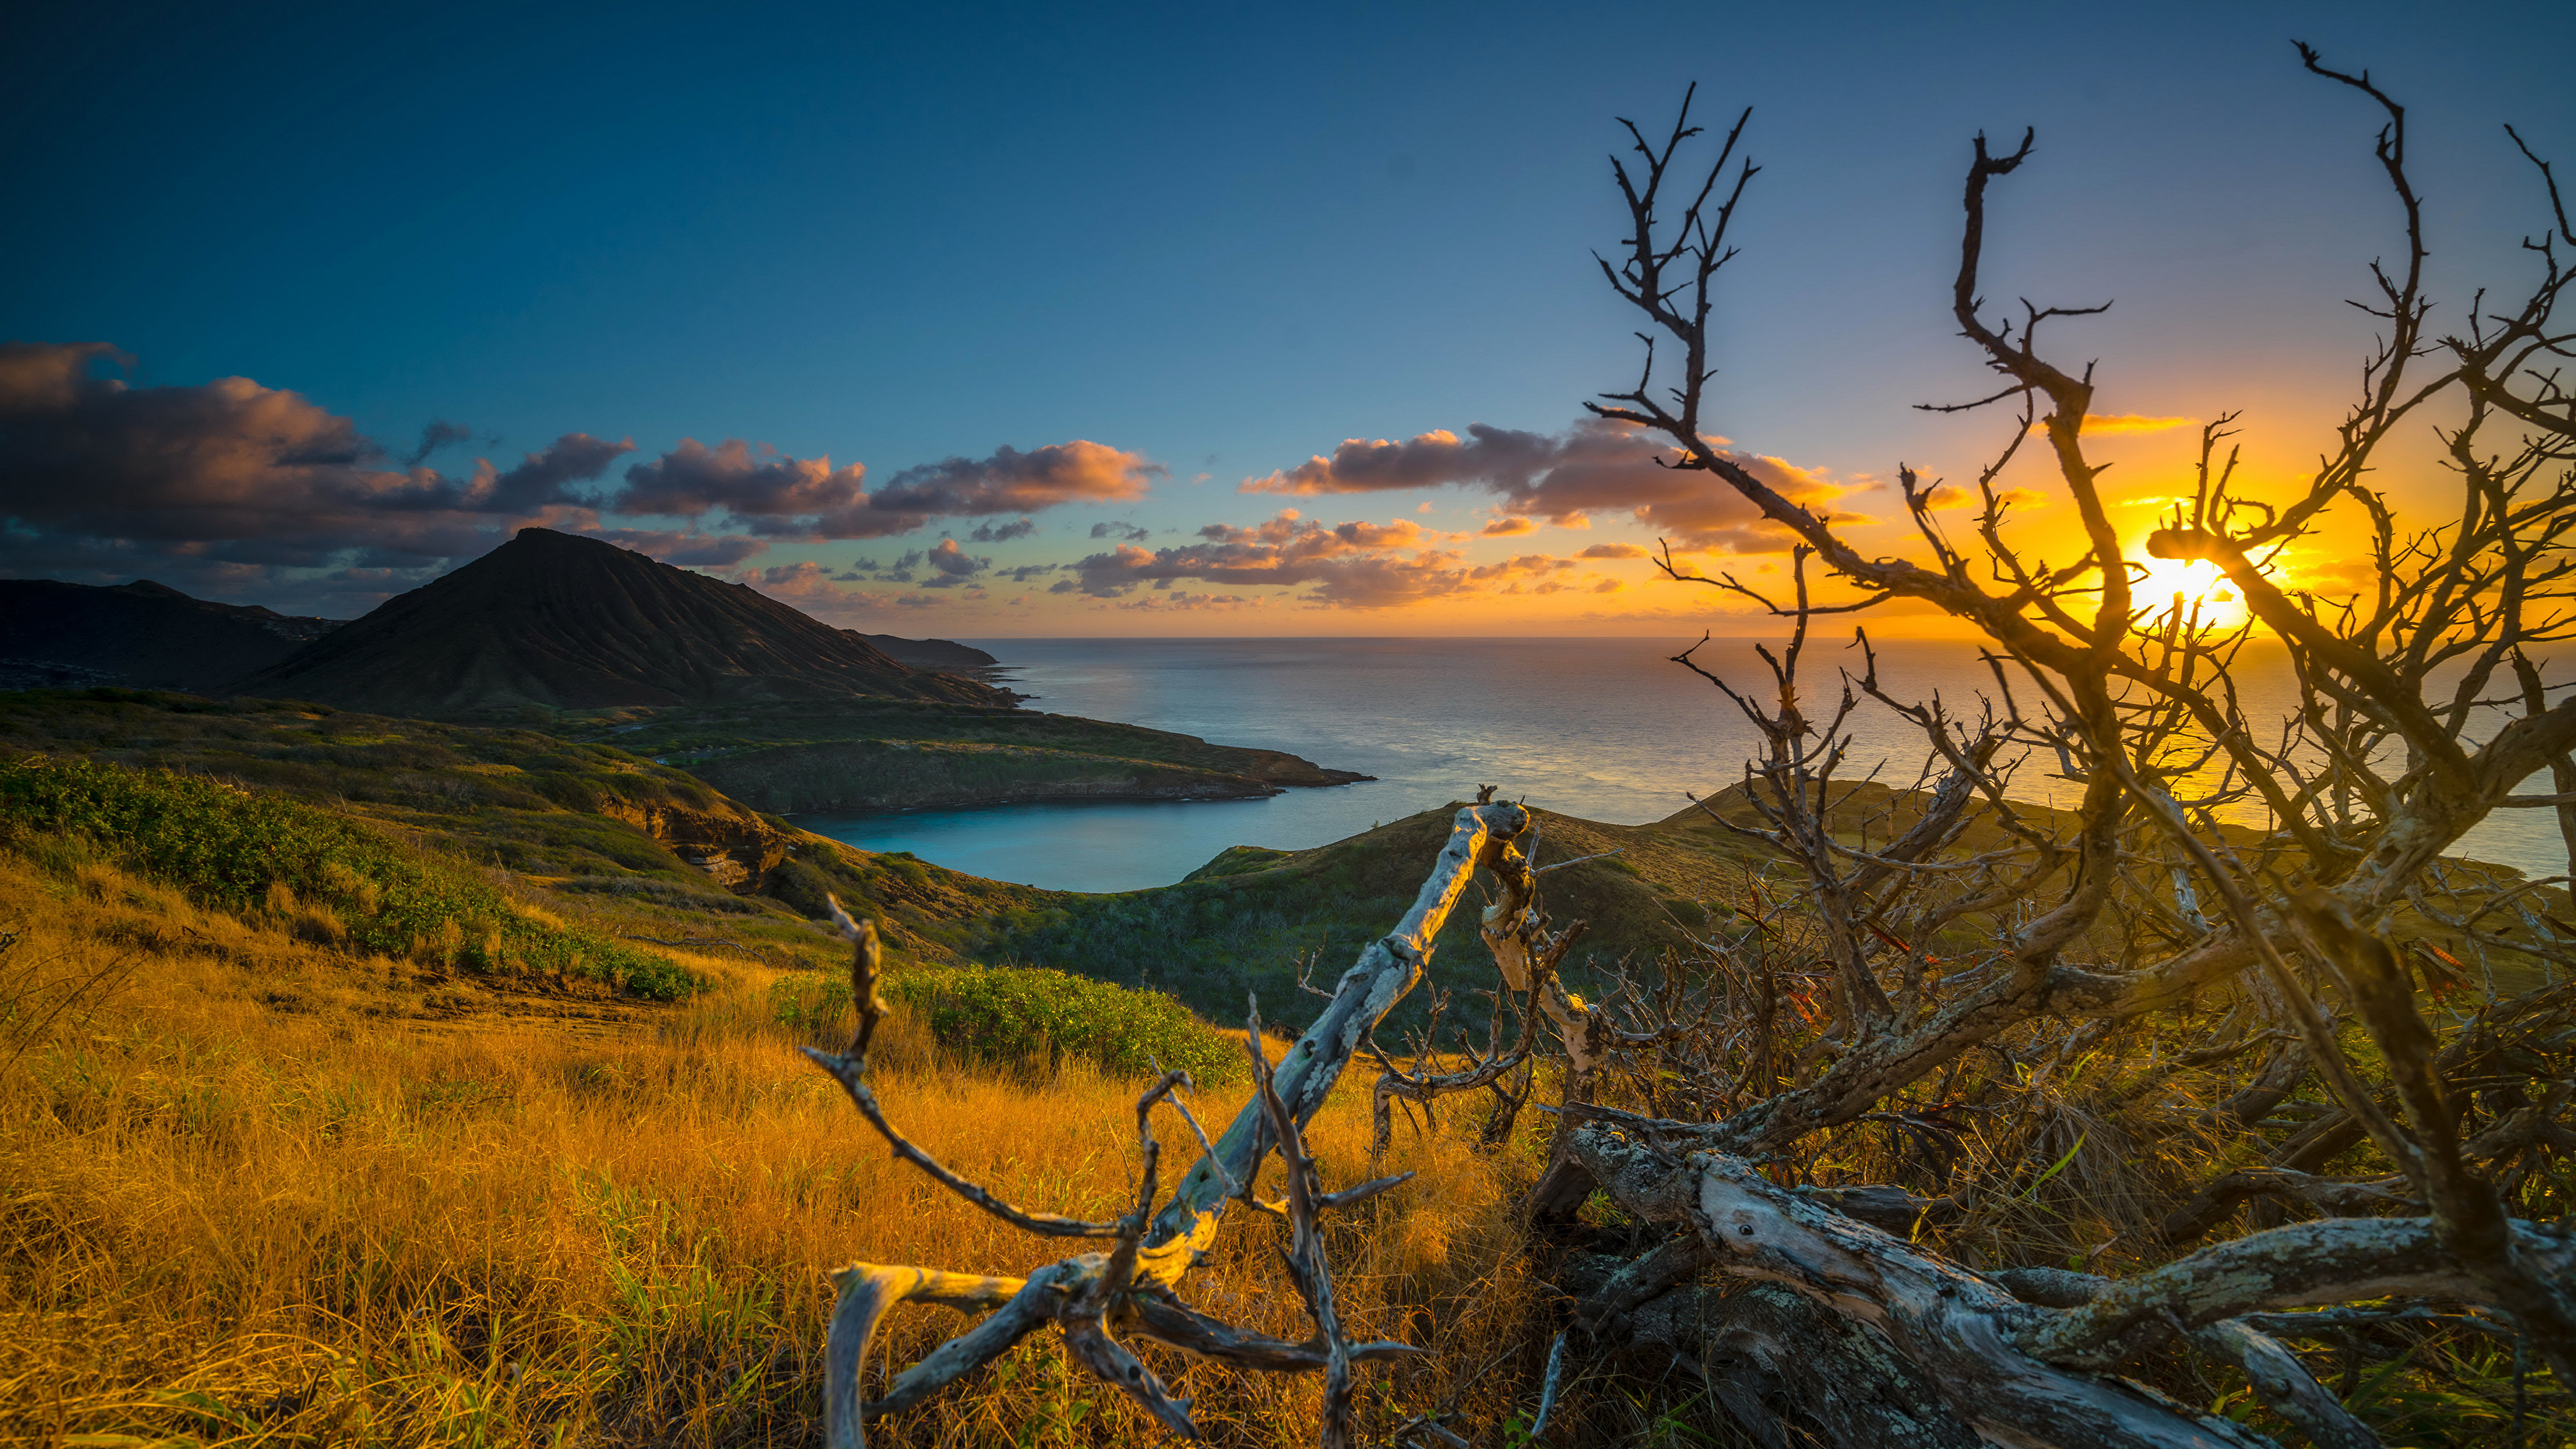 壁紙 3840x2160 熱帯 朝焼けと日没 海岸 風景写真 ハワイ州 枝 雲 丘 自然 ダウンロード 写真